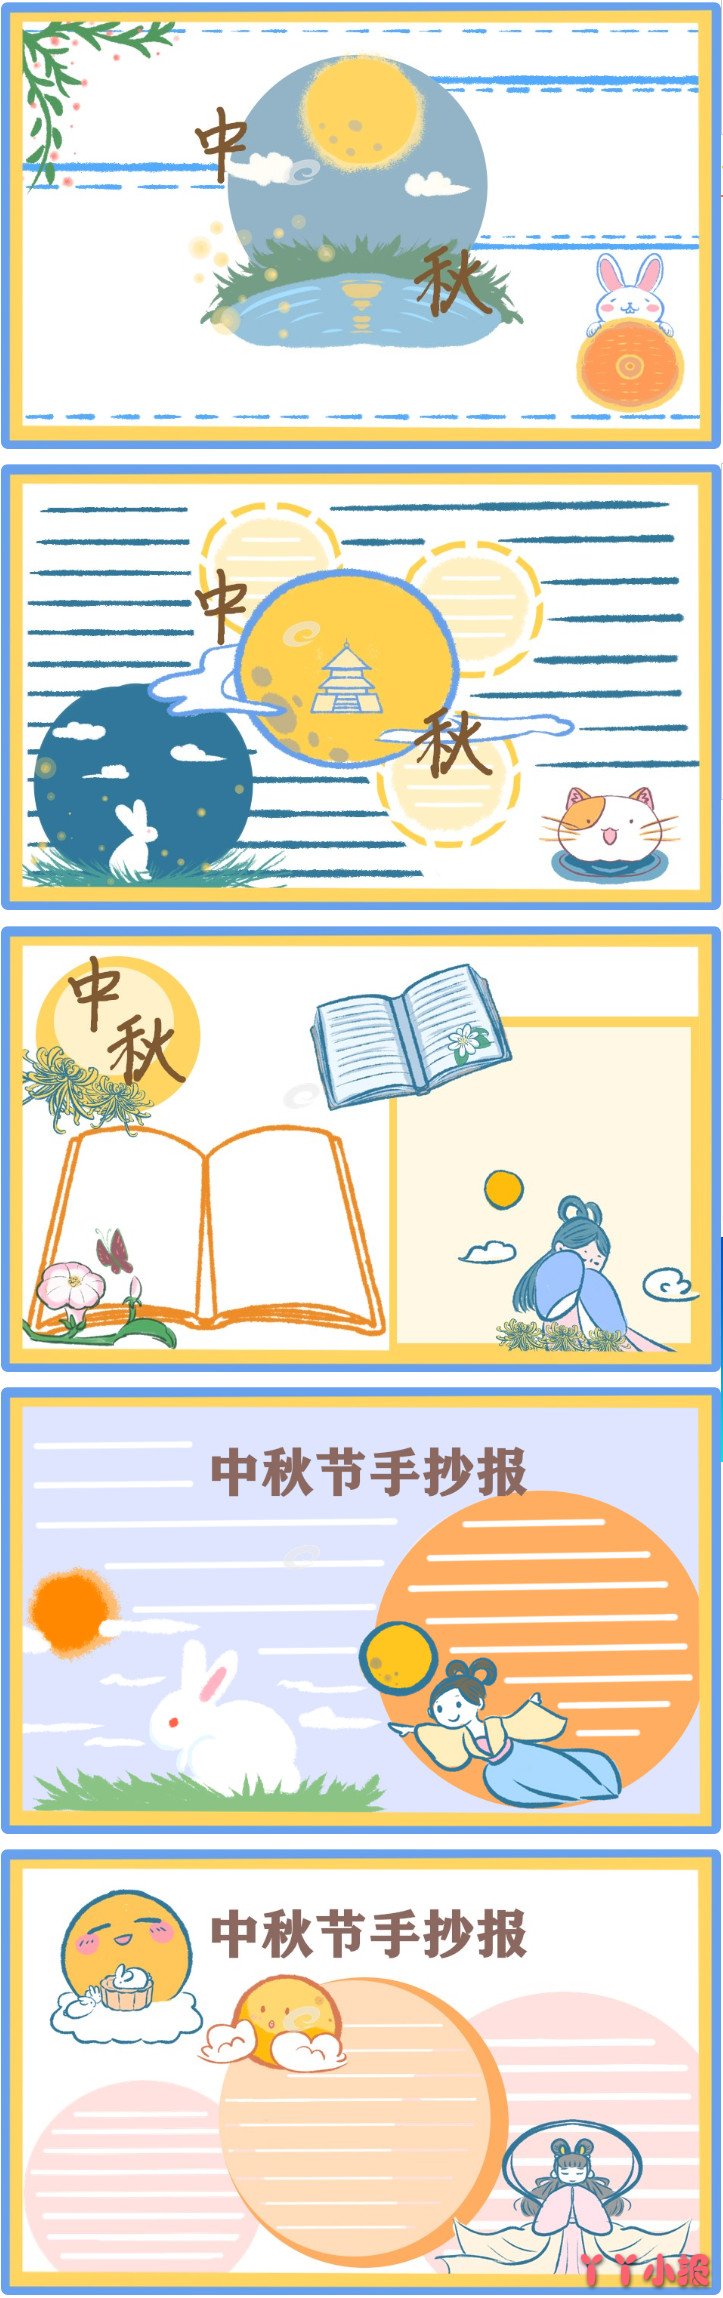 小学生庆祝中秋节团圆手抄报模板图片